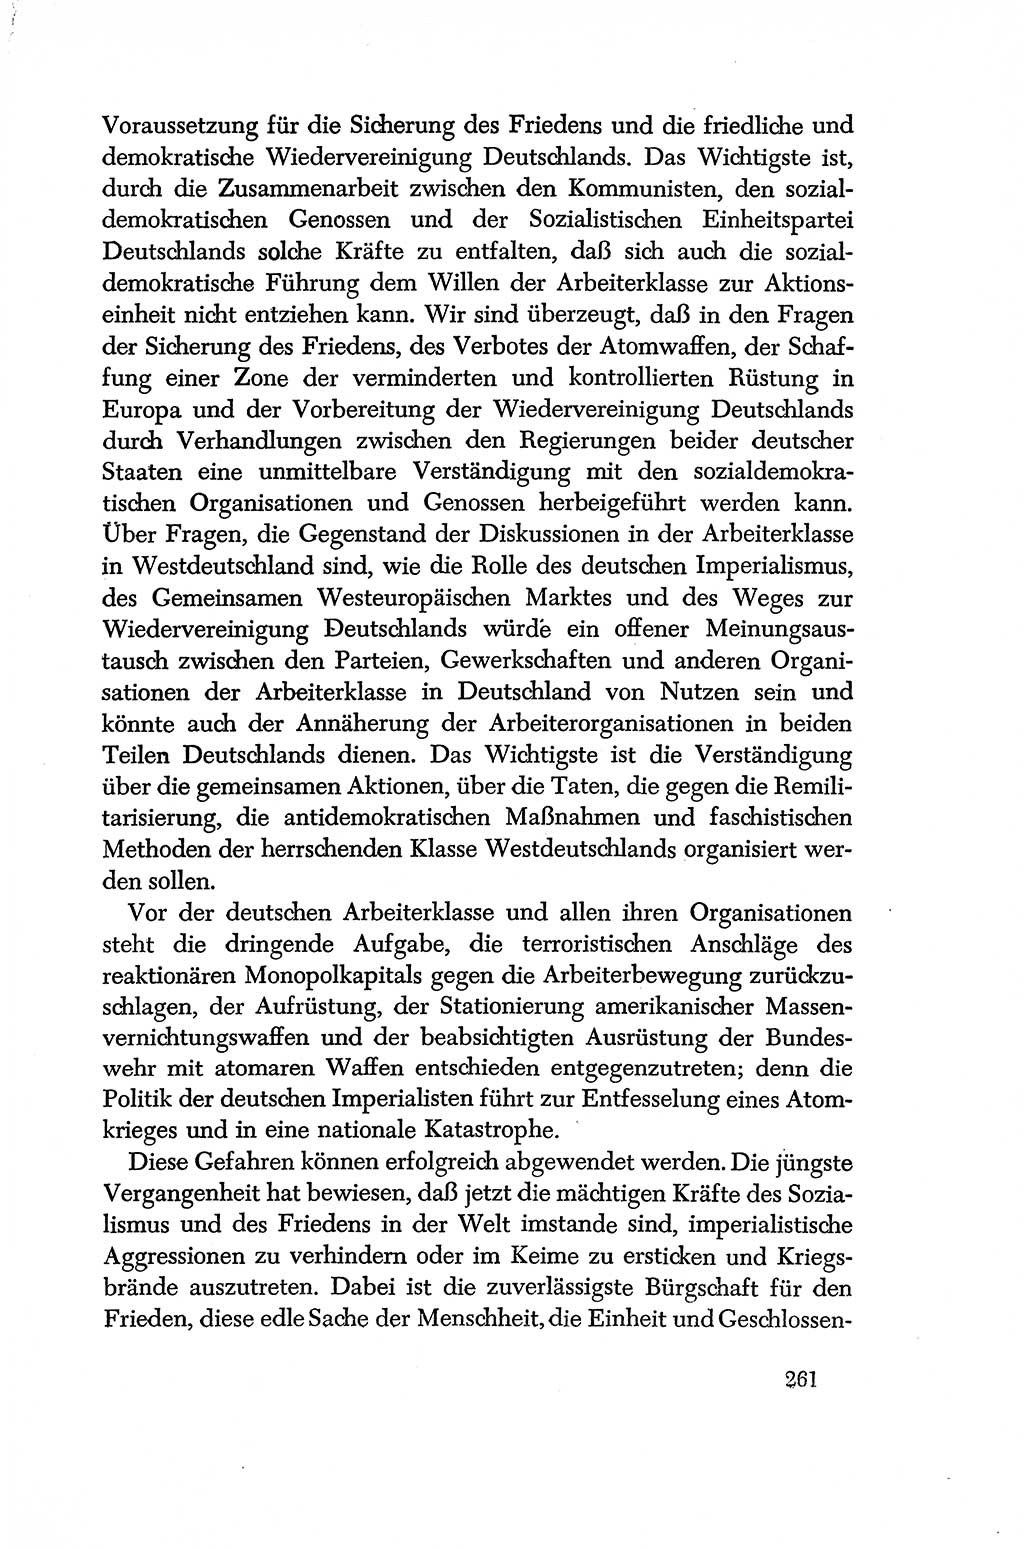 Dokumente der Sozialistischen Einheitspartei Deutschlands (SED) [Deutsche Demokratische Republik (DDR)] 1956-1957, Seite 261 (Dok. SED DDR 1956-1957, S. 261)